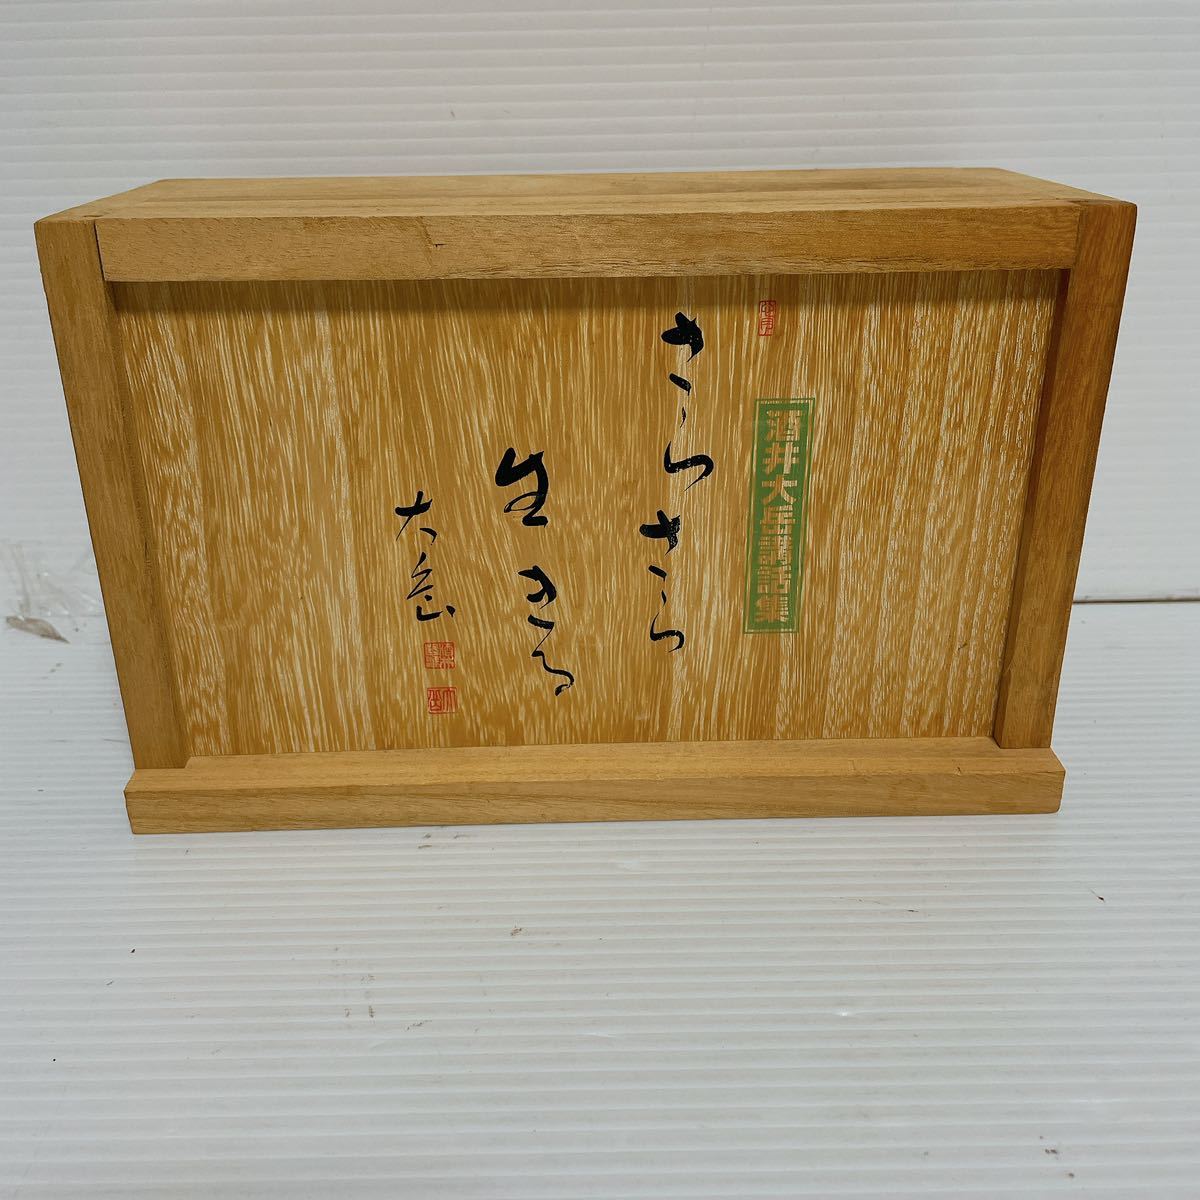 1 иен старт не осмотр товар sake . большой пик . рассказ сборник .... сырой .. все 12 шт кассетная лента S-084